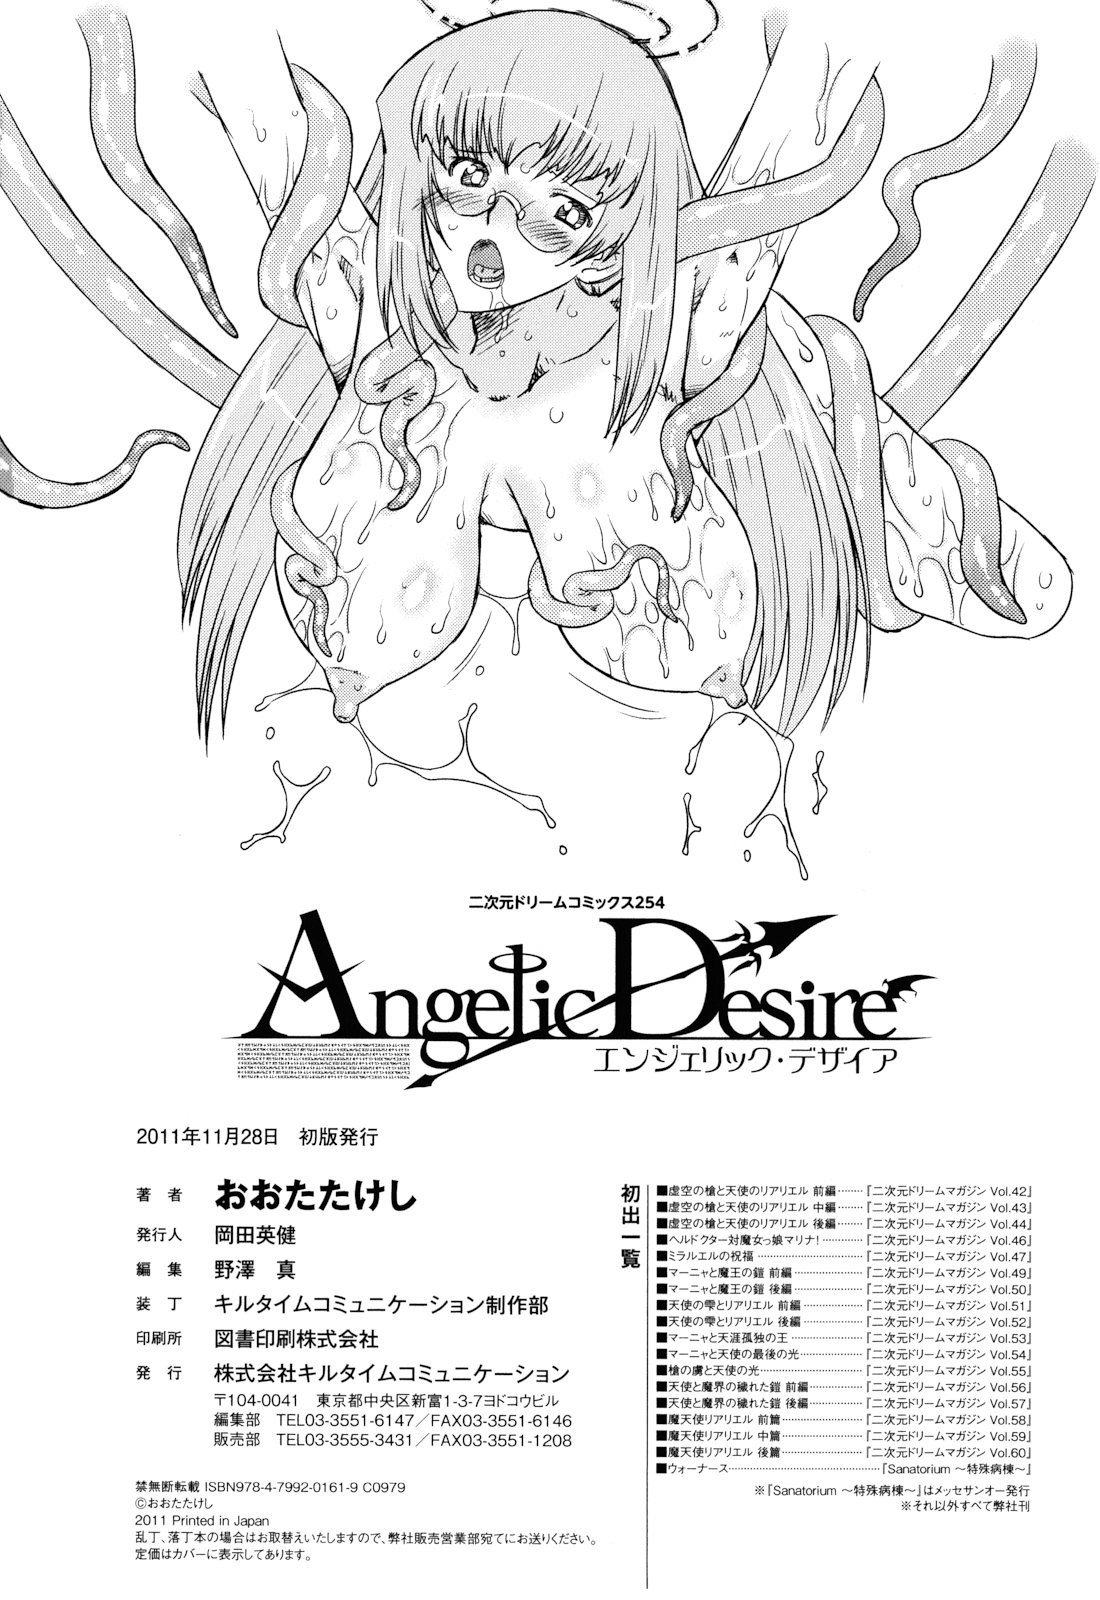 [おおたたけし] Angelic Desire